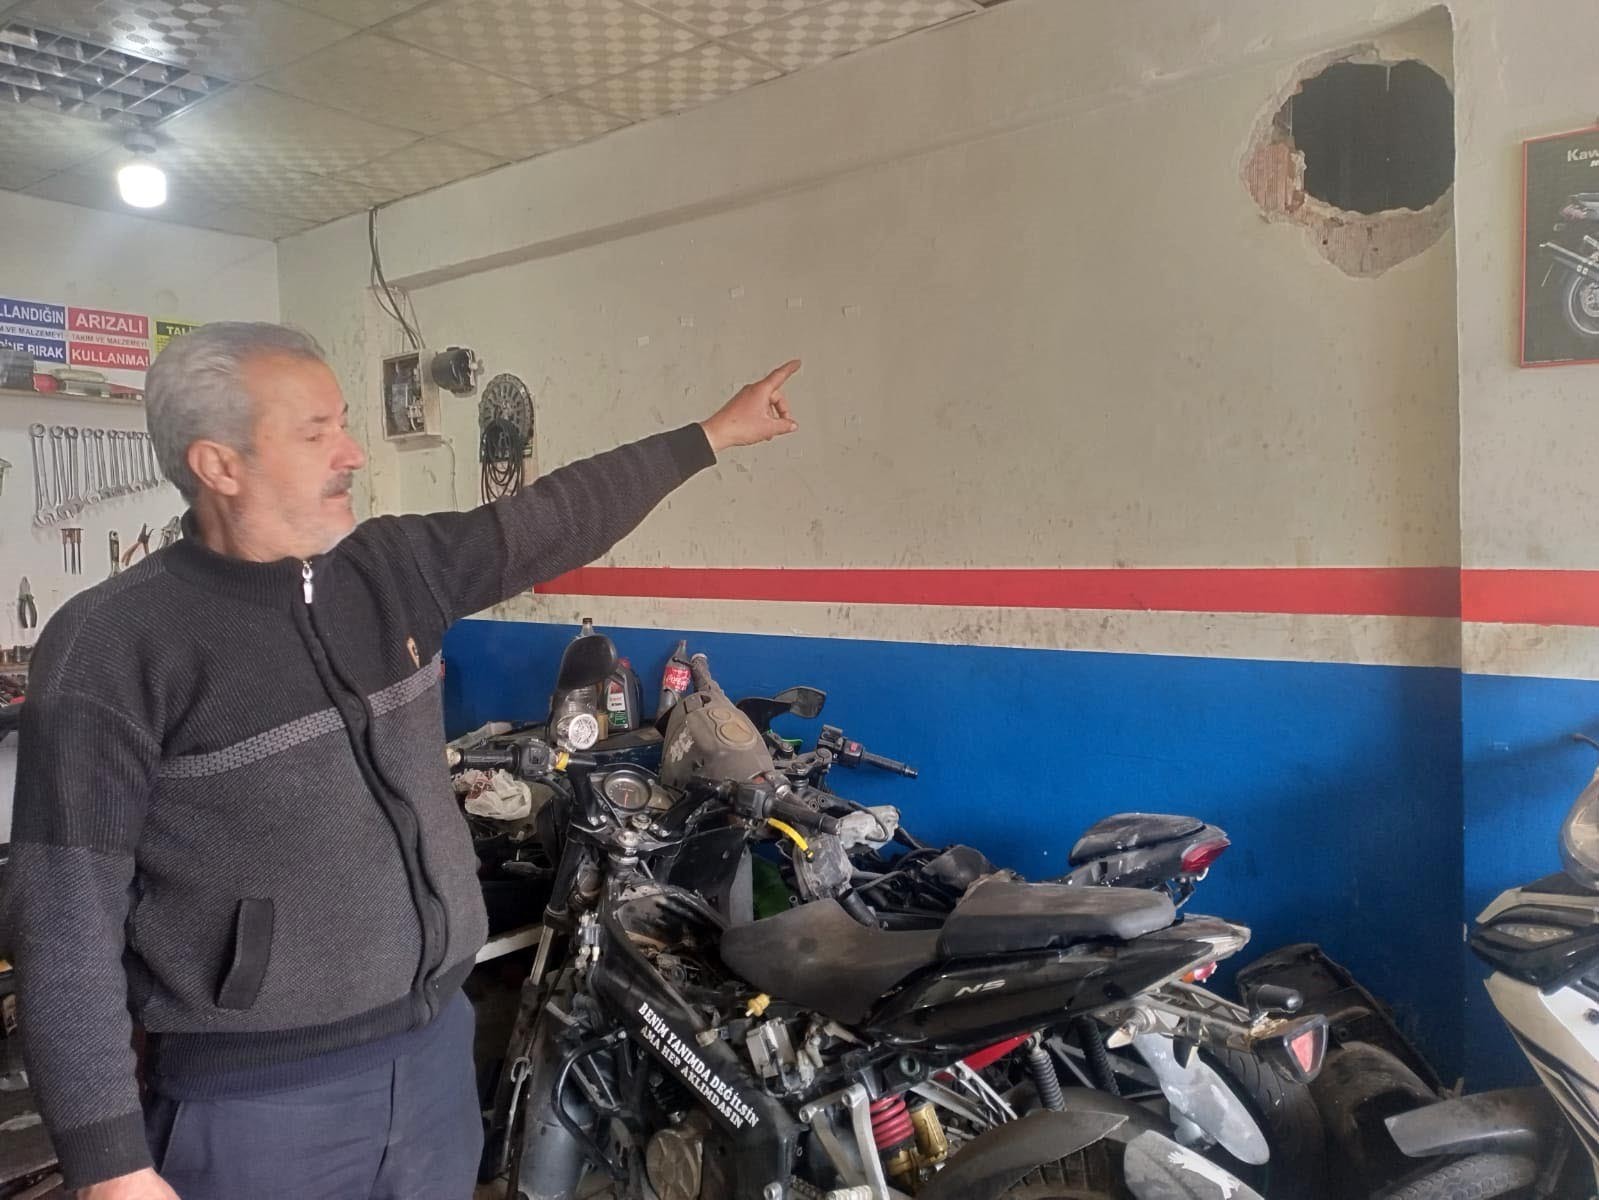 Duvarını deldikleri motosiklet tamircisini soydular #diyarbakir